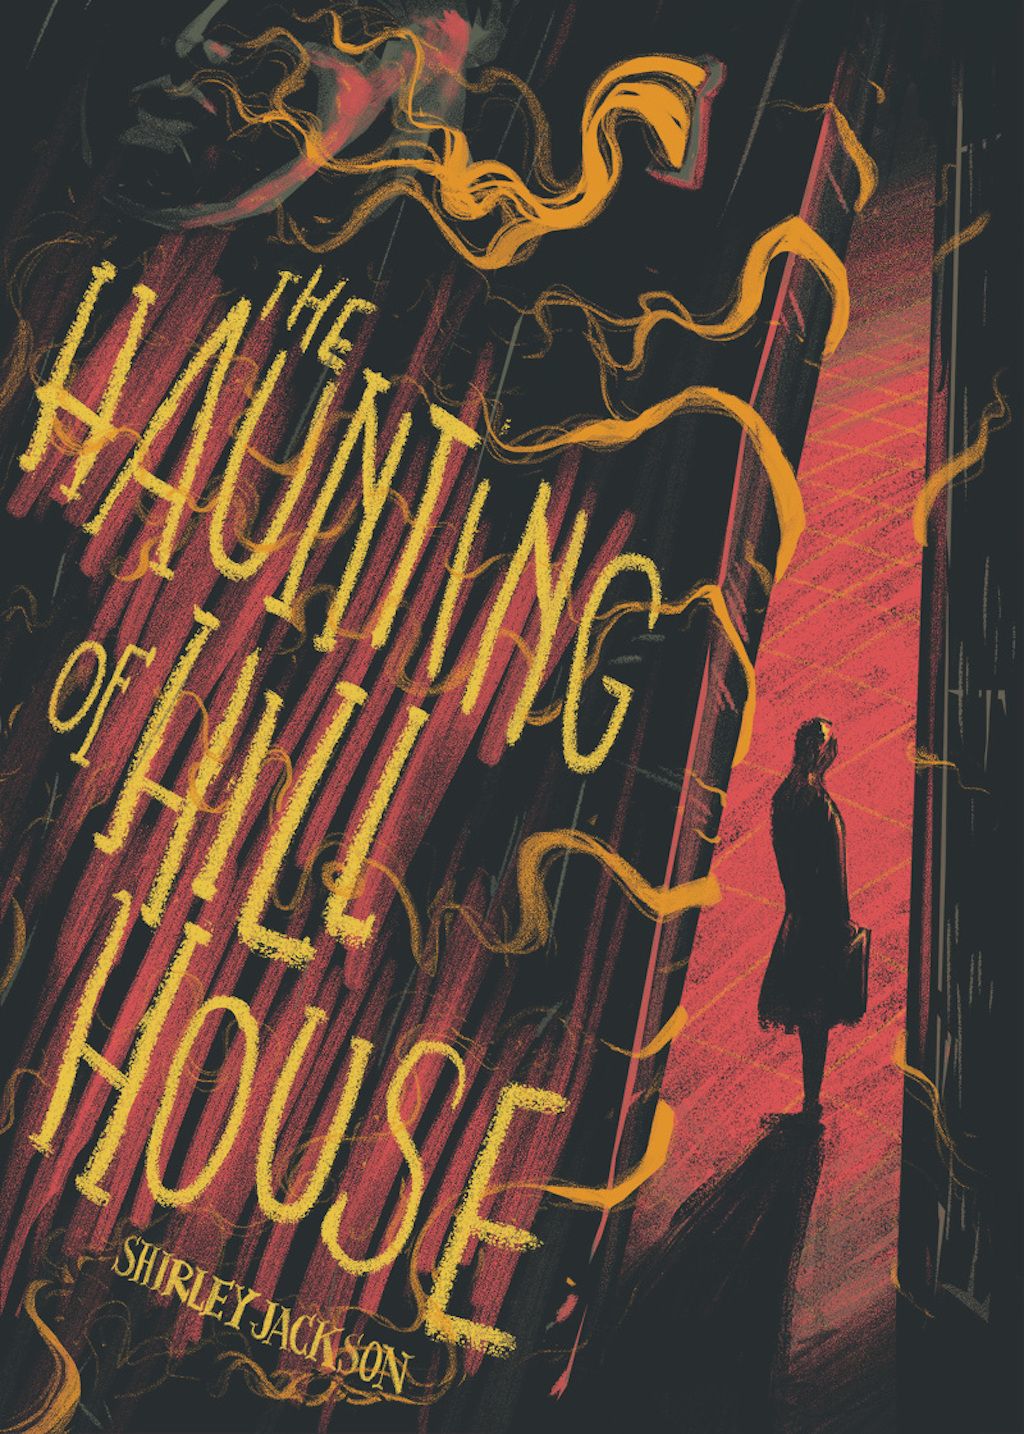 13 vecí, ktoré by ste mali vedieť o Haunting of Hill House - najhorúcejšia nová šou Netflixu